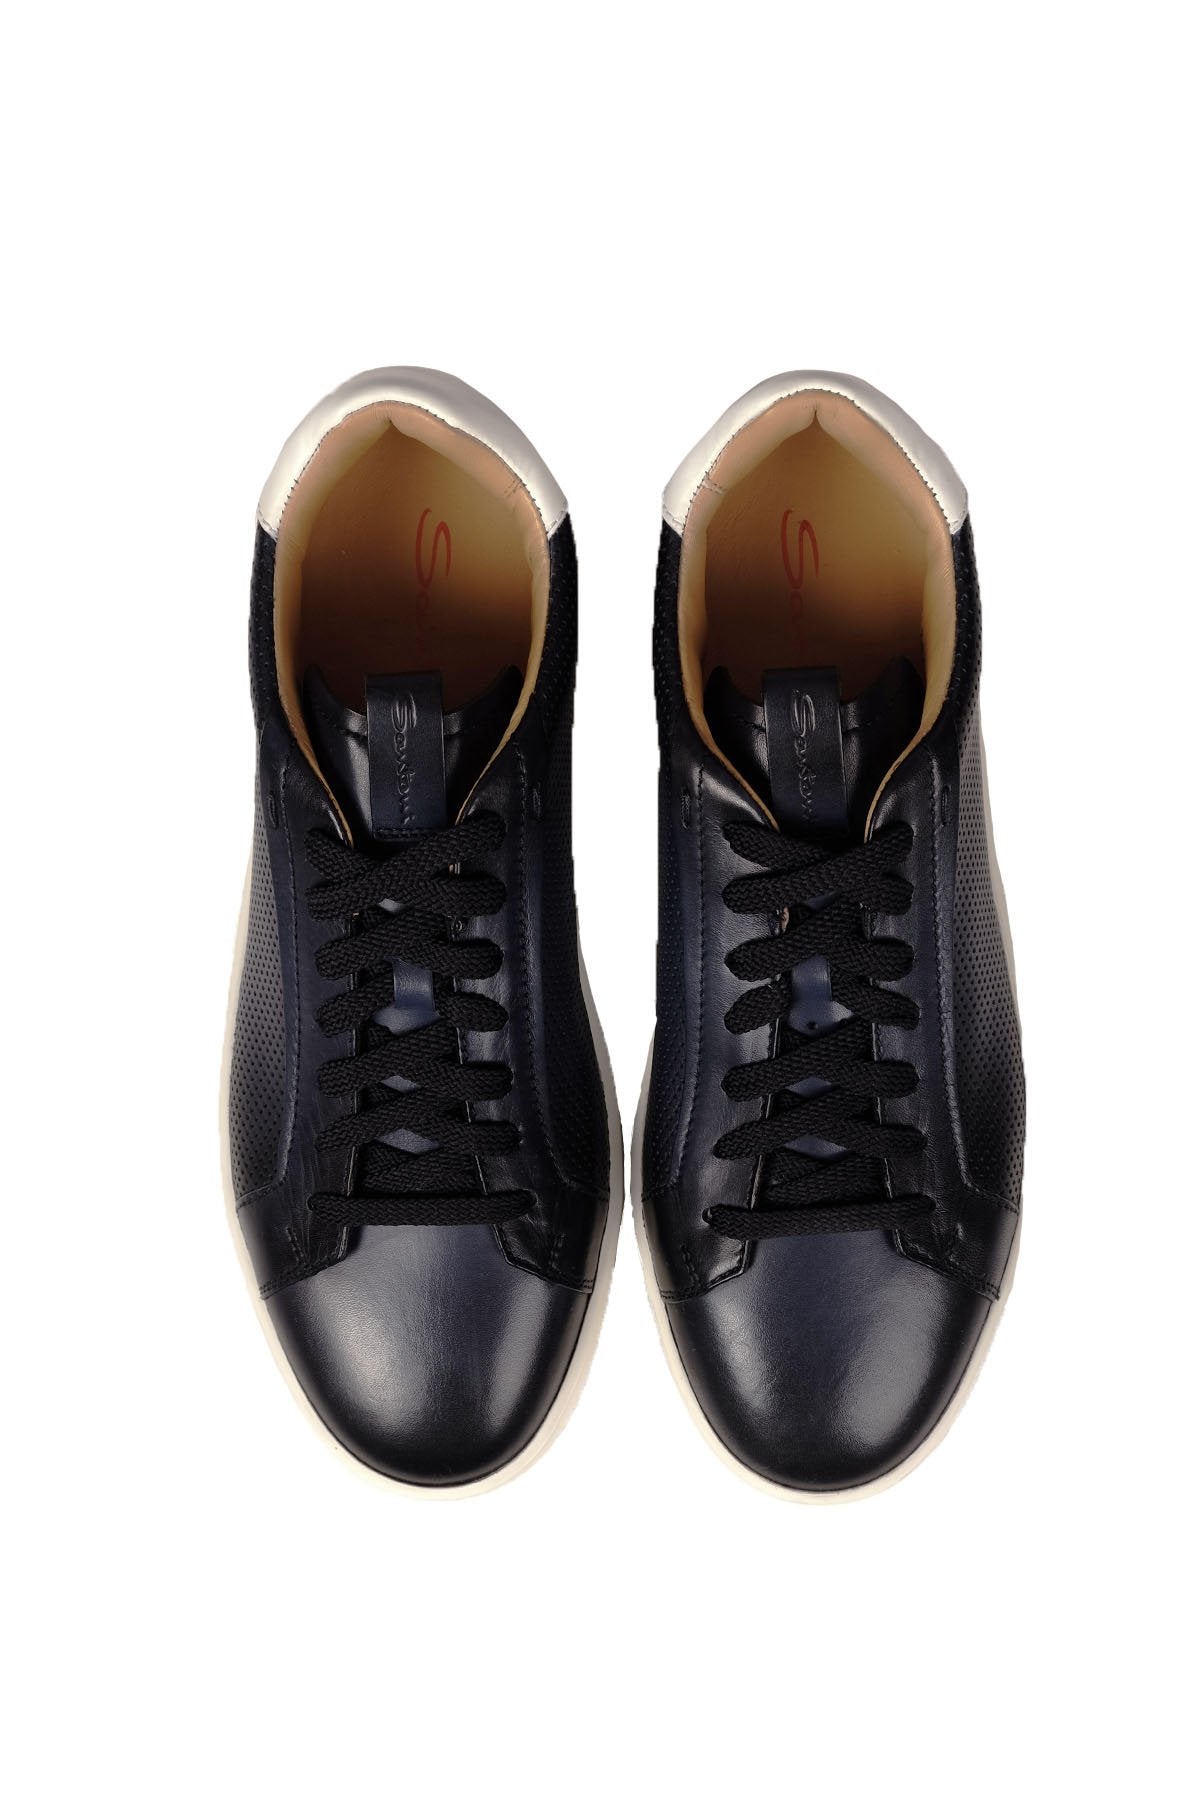 Santoni Baskılı Deri Sneaker Ayakkabı-Libas Trendy Fashion Store